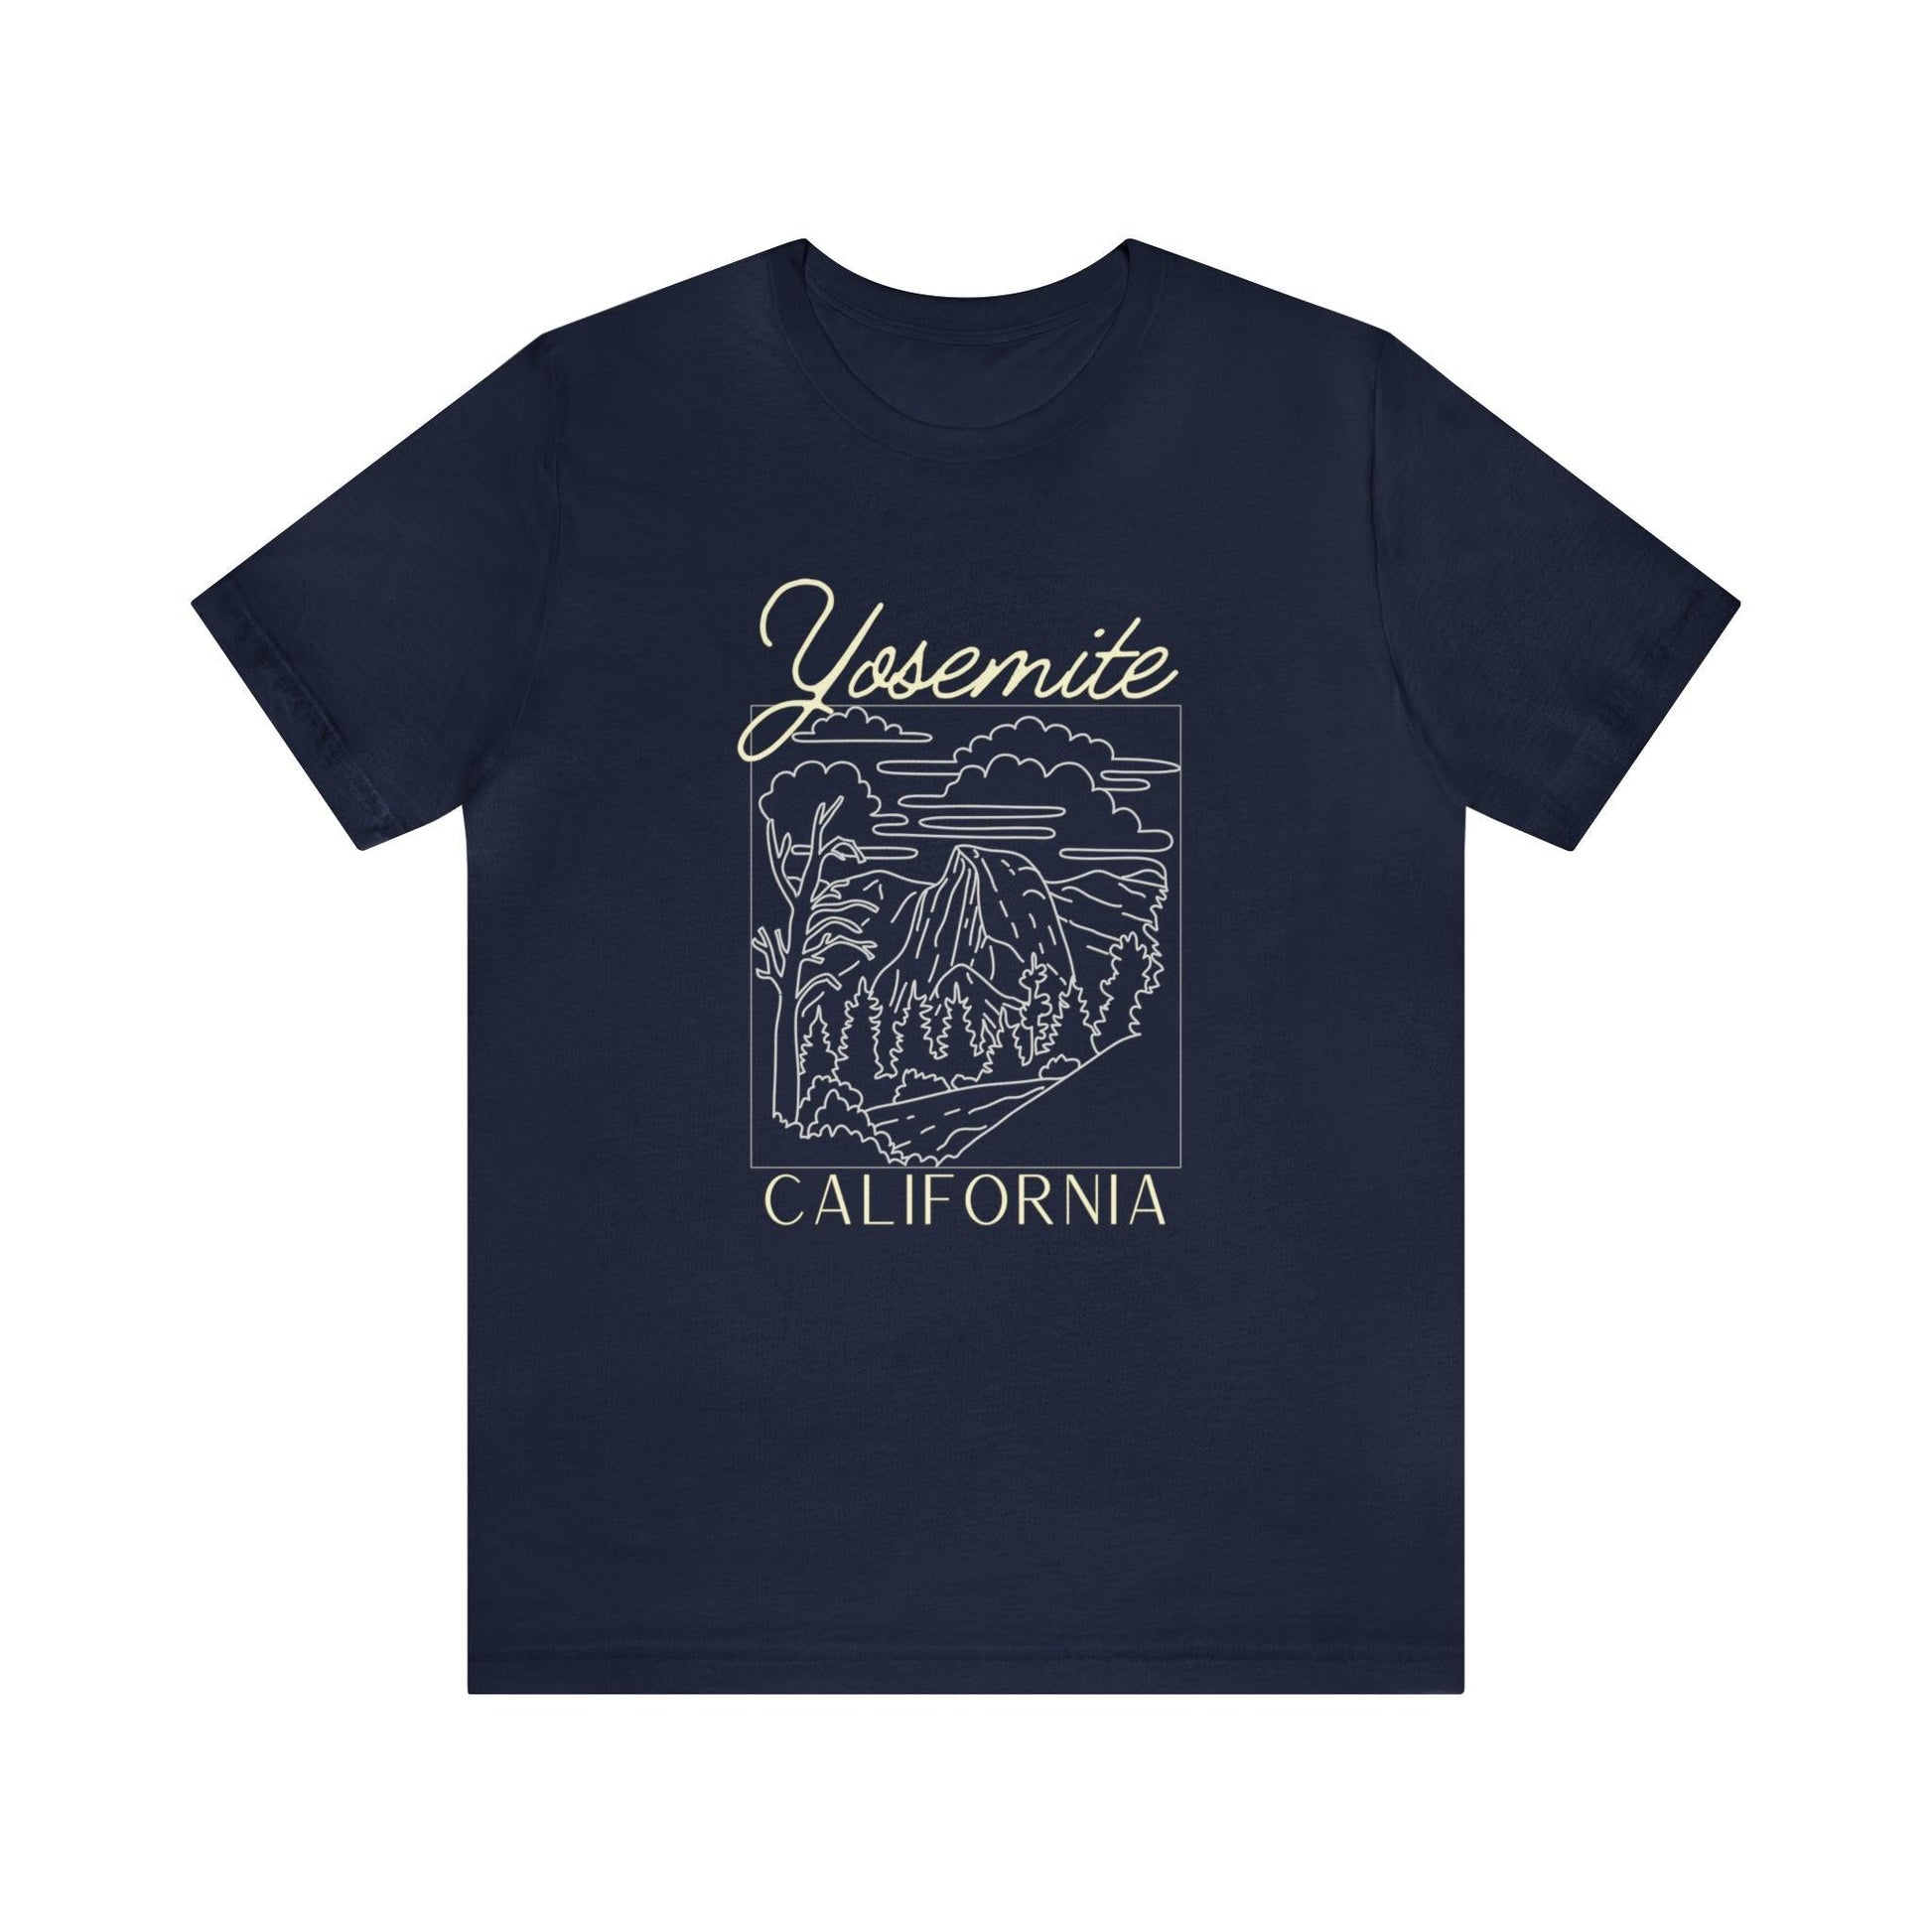 Yosemite, California: A Natural Wonder on a T-Shirt - The Pura Vida Co.